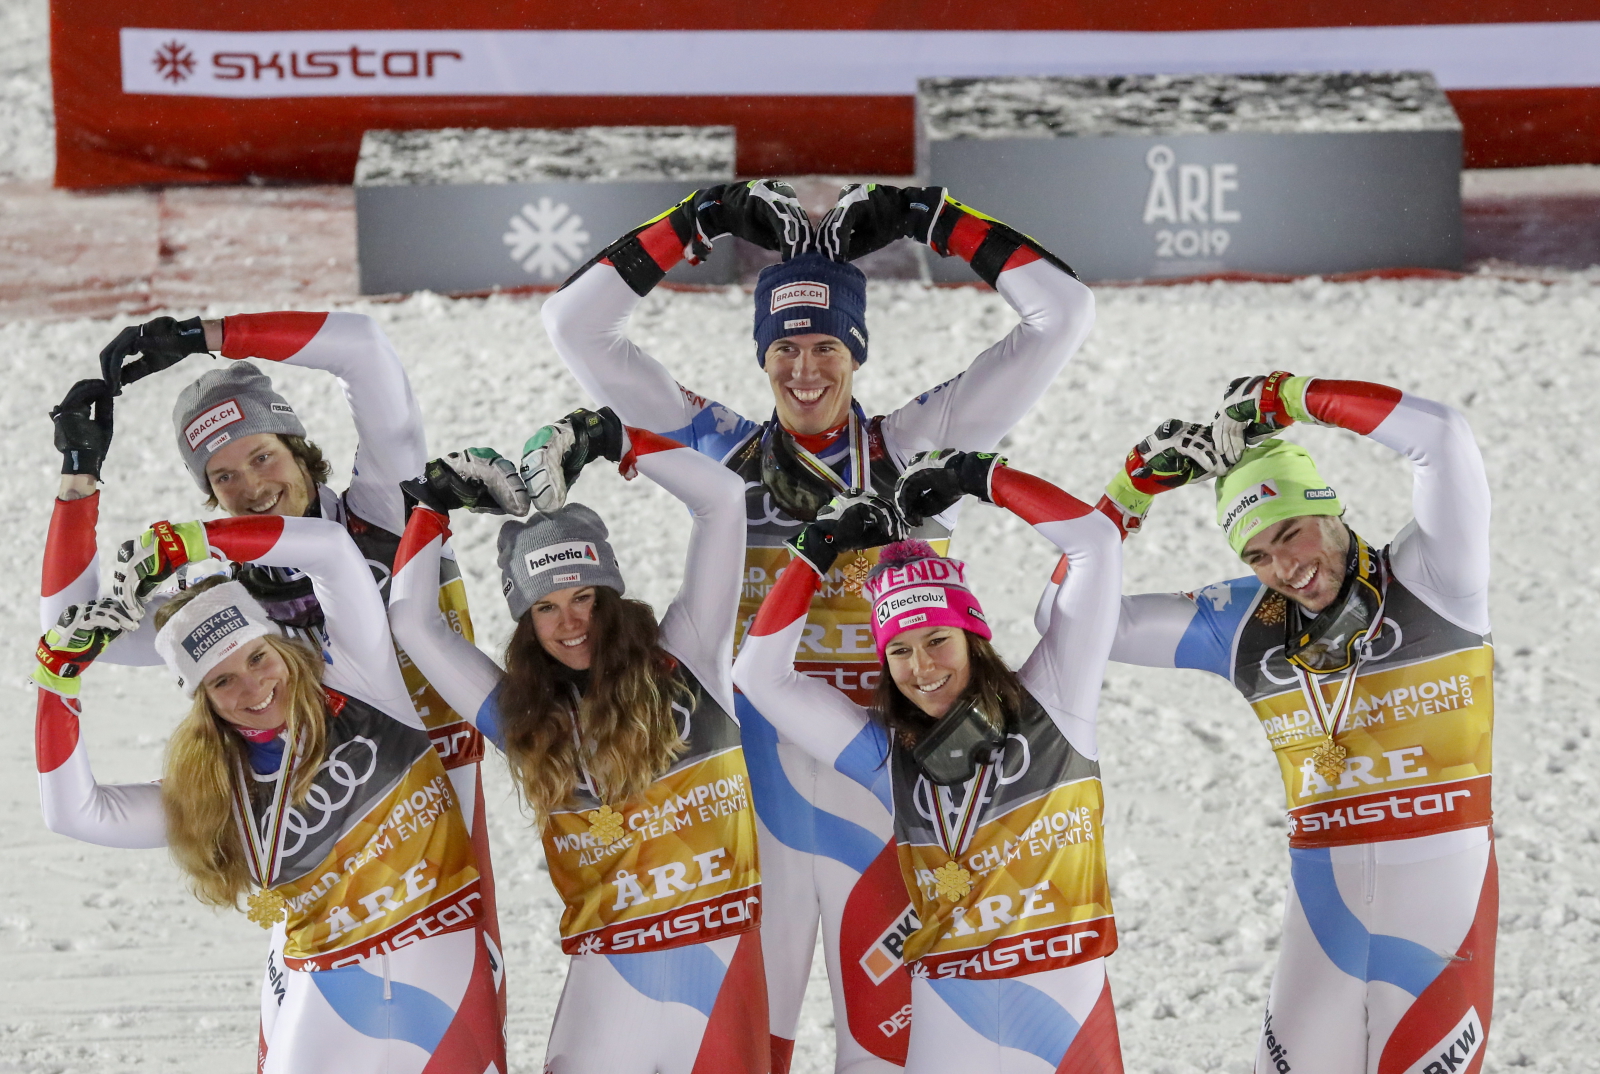 Szwajcarzy - zwycięzcy drużynowej rywalizacji podczas Mistrzostw Świata w Narciarstwie Alpejskim w szwedzkim Are. Fot. PAP/EPA/VALDRIN XHEMAJ